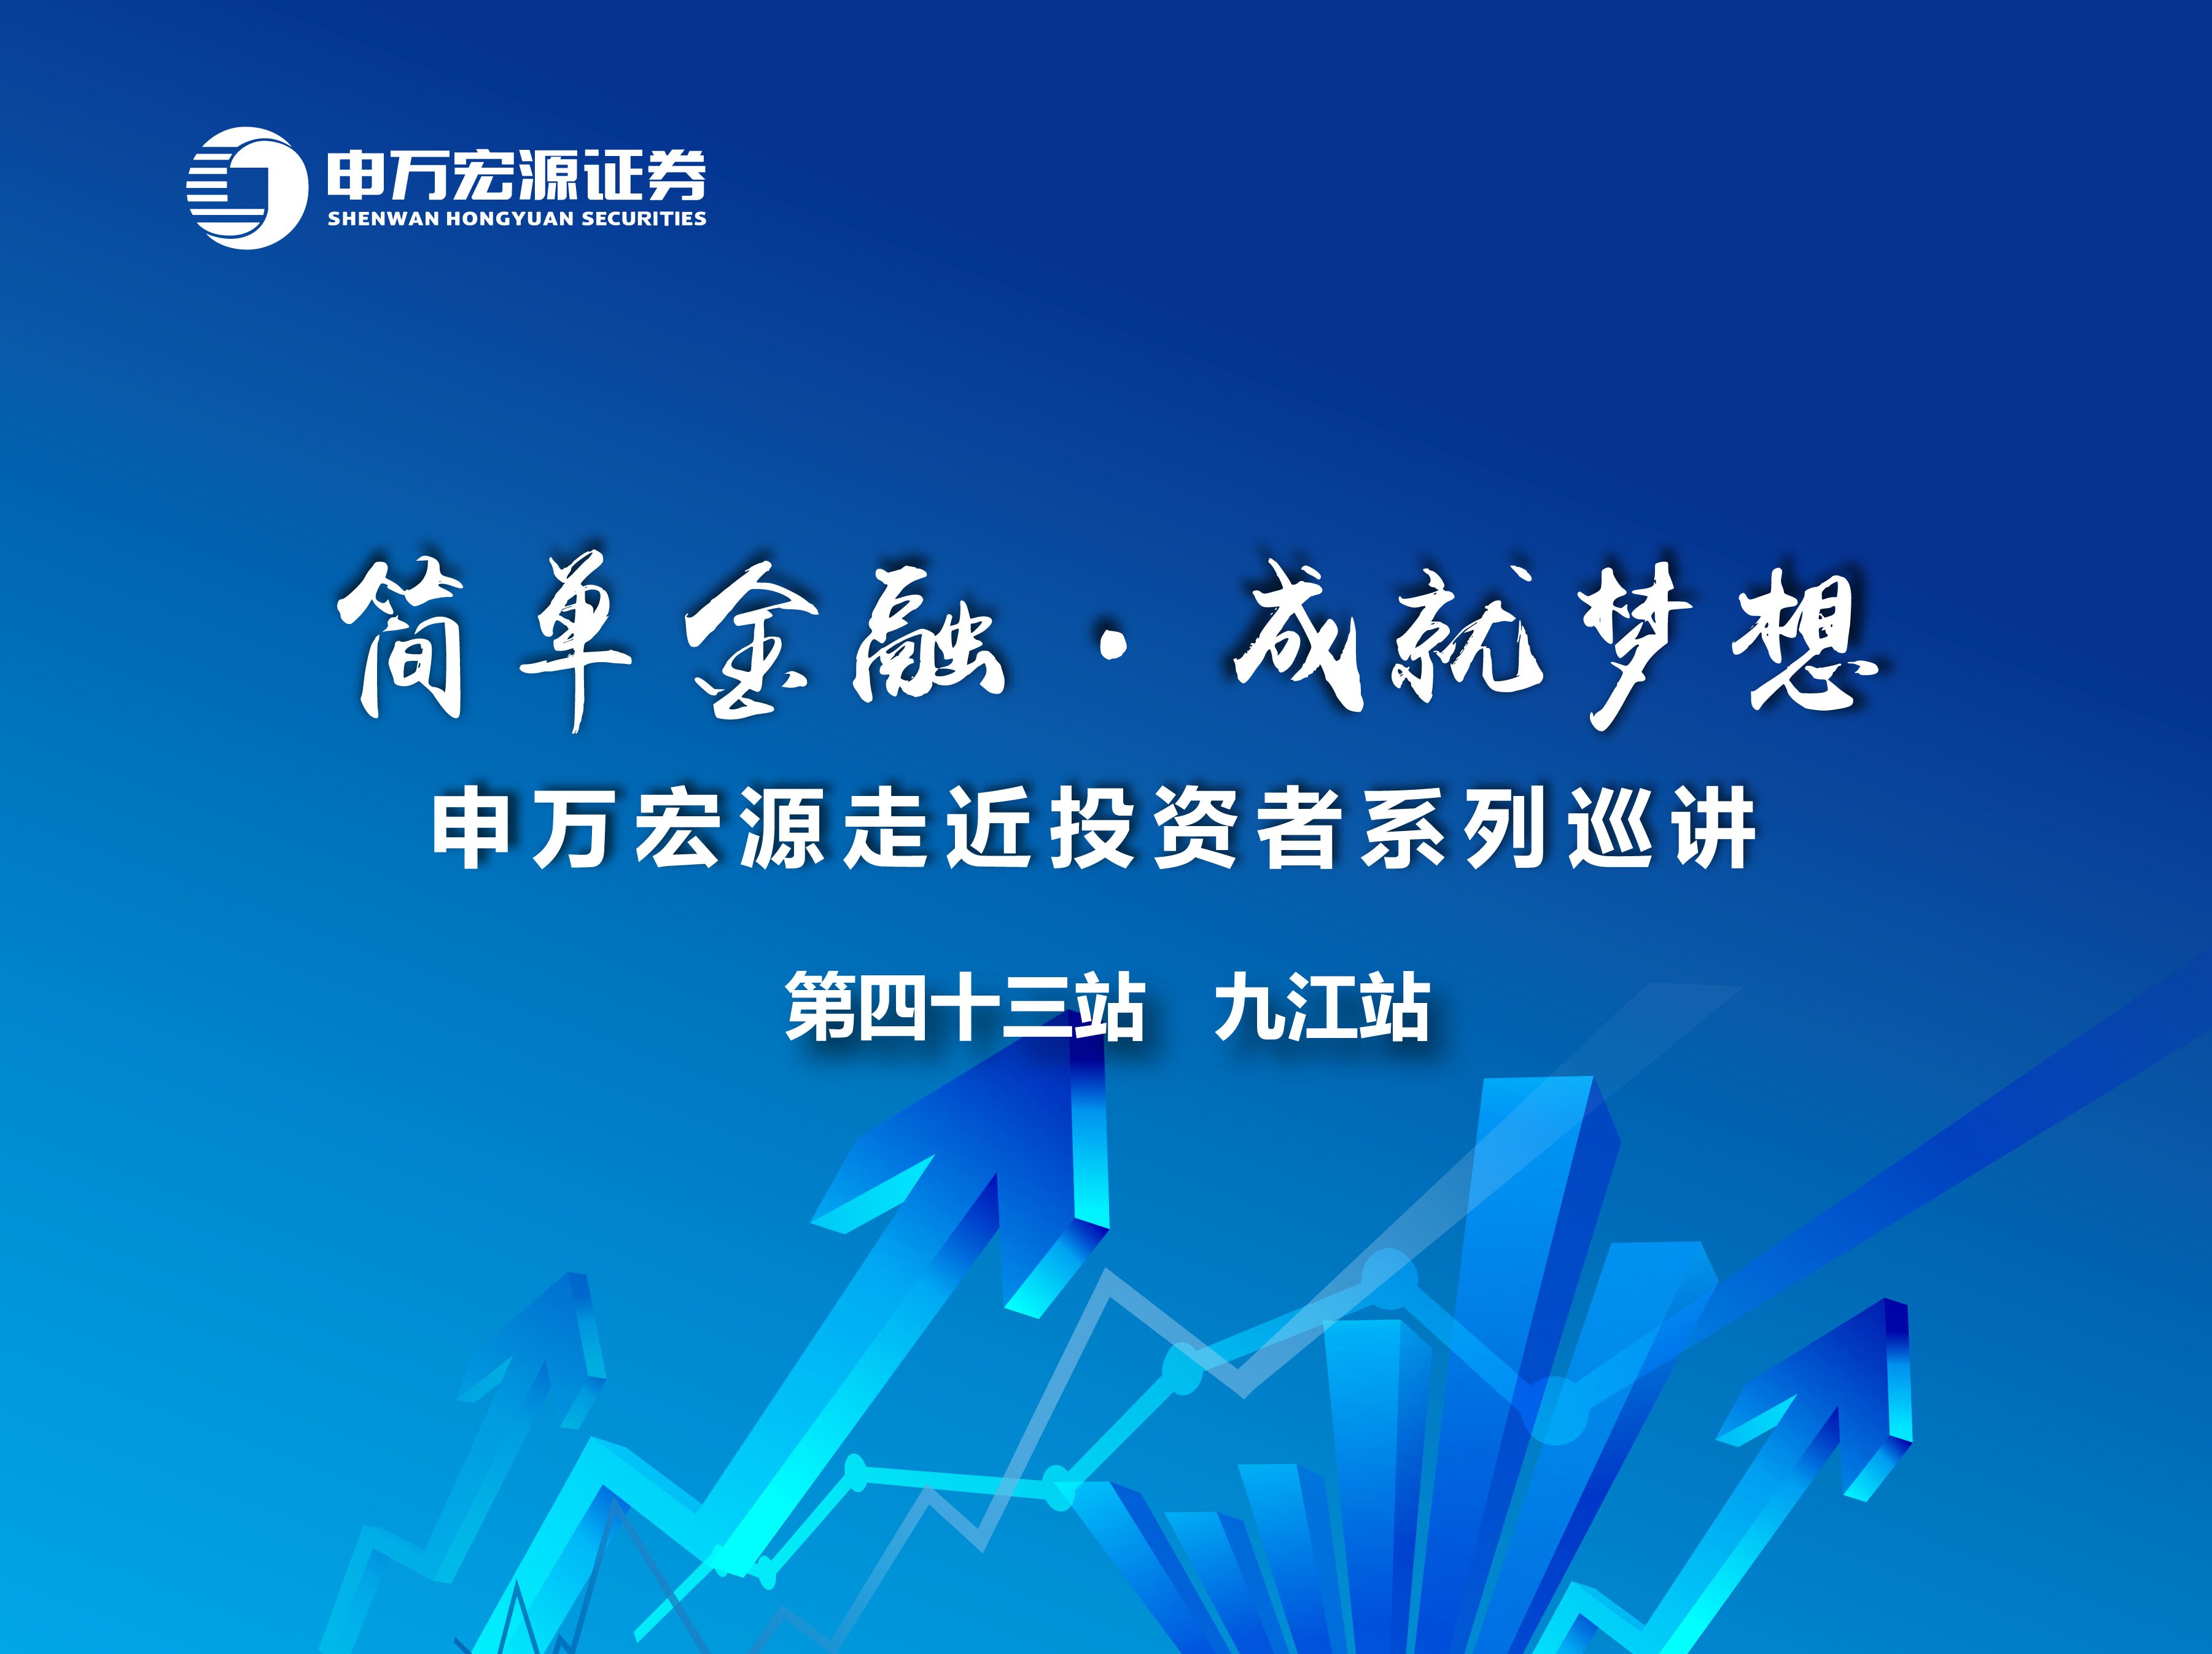 申万宏源证券首席市场分析师桂浩明周末要来九江了